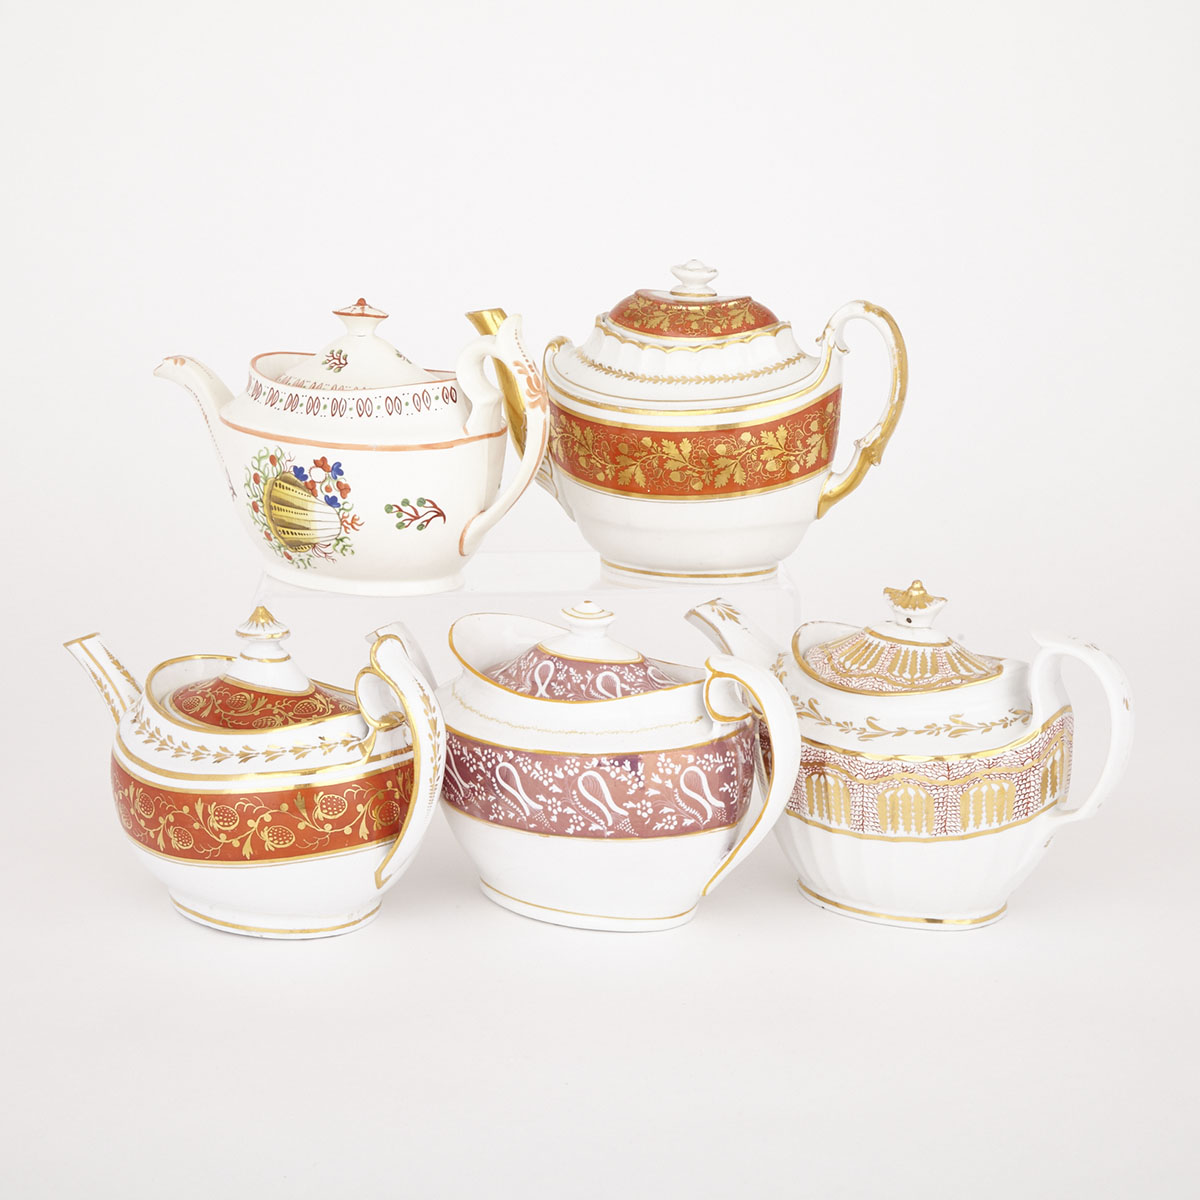 Five English Porcelain Tea Pots, 19th century